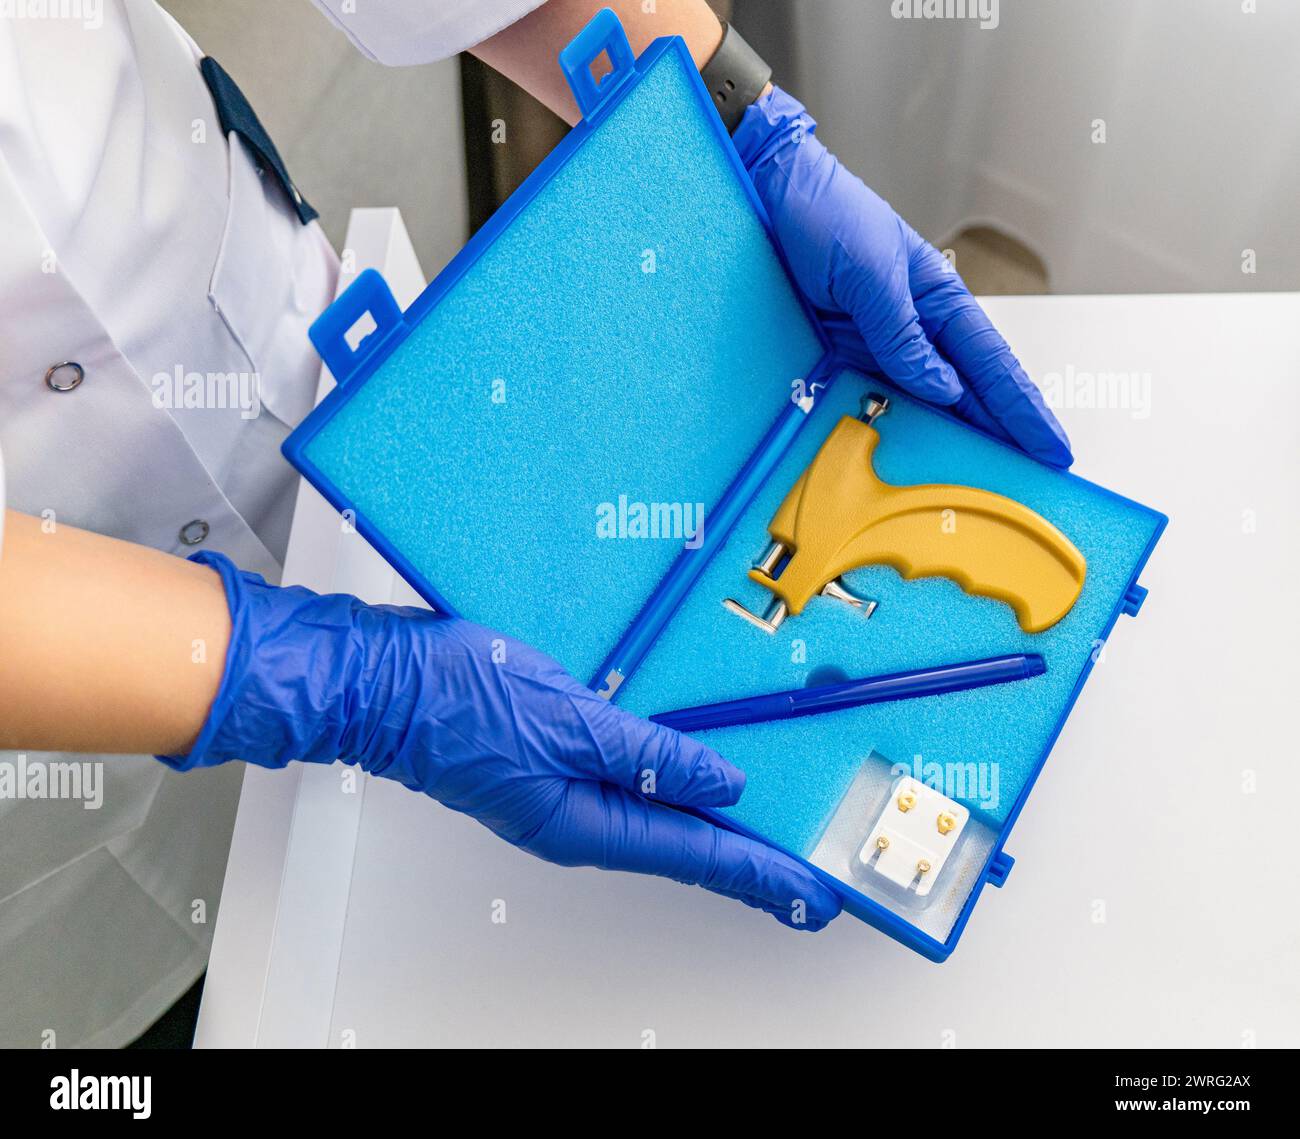 Utensili professionali per perforare l'orecchio in una speciale scatola blu della pistola perforatrice. Foto di alta qualità Foto Stock